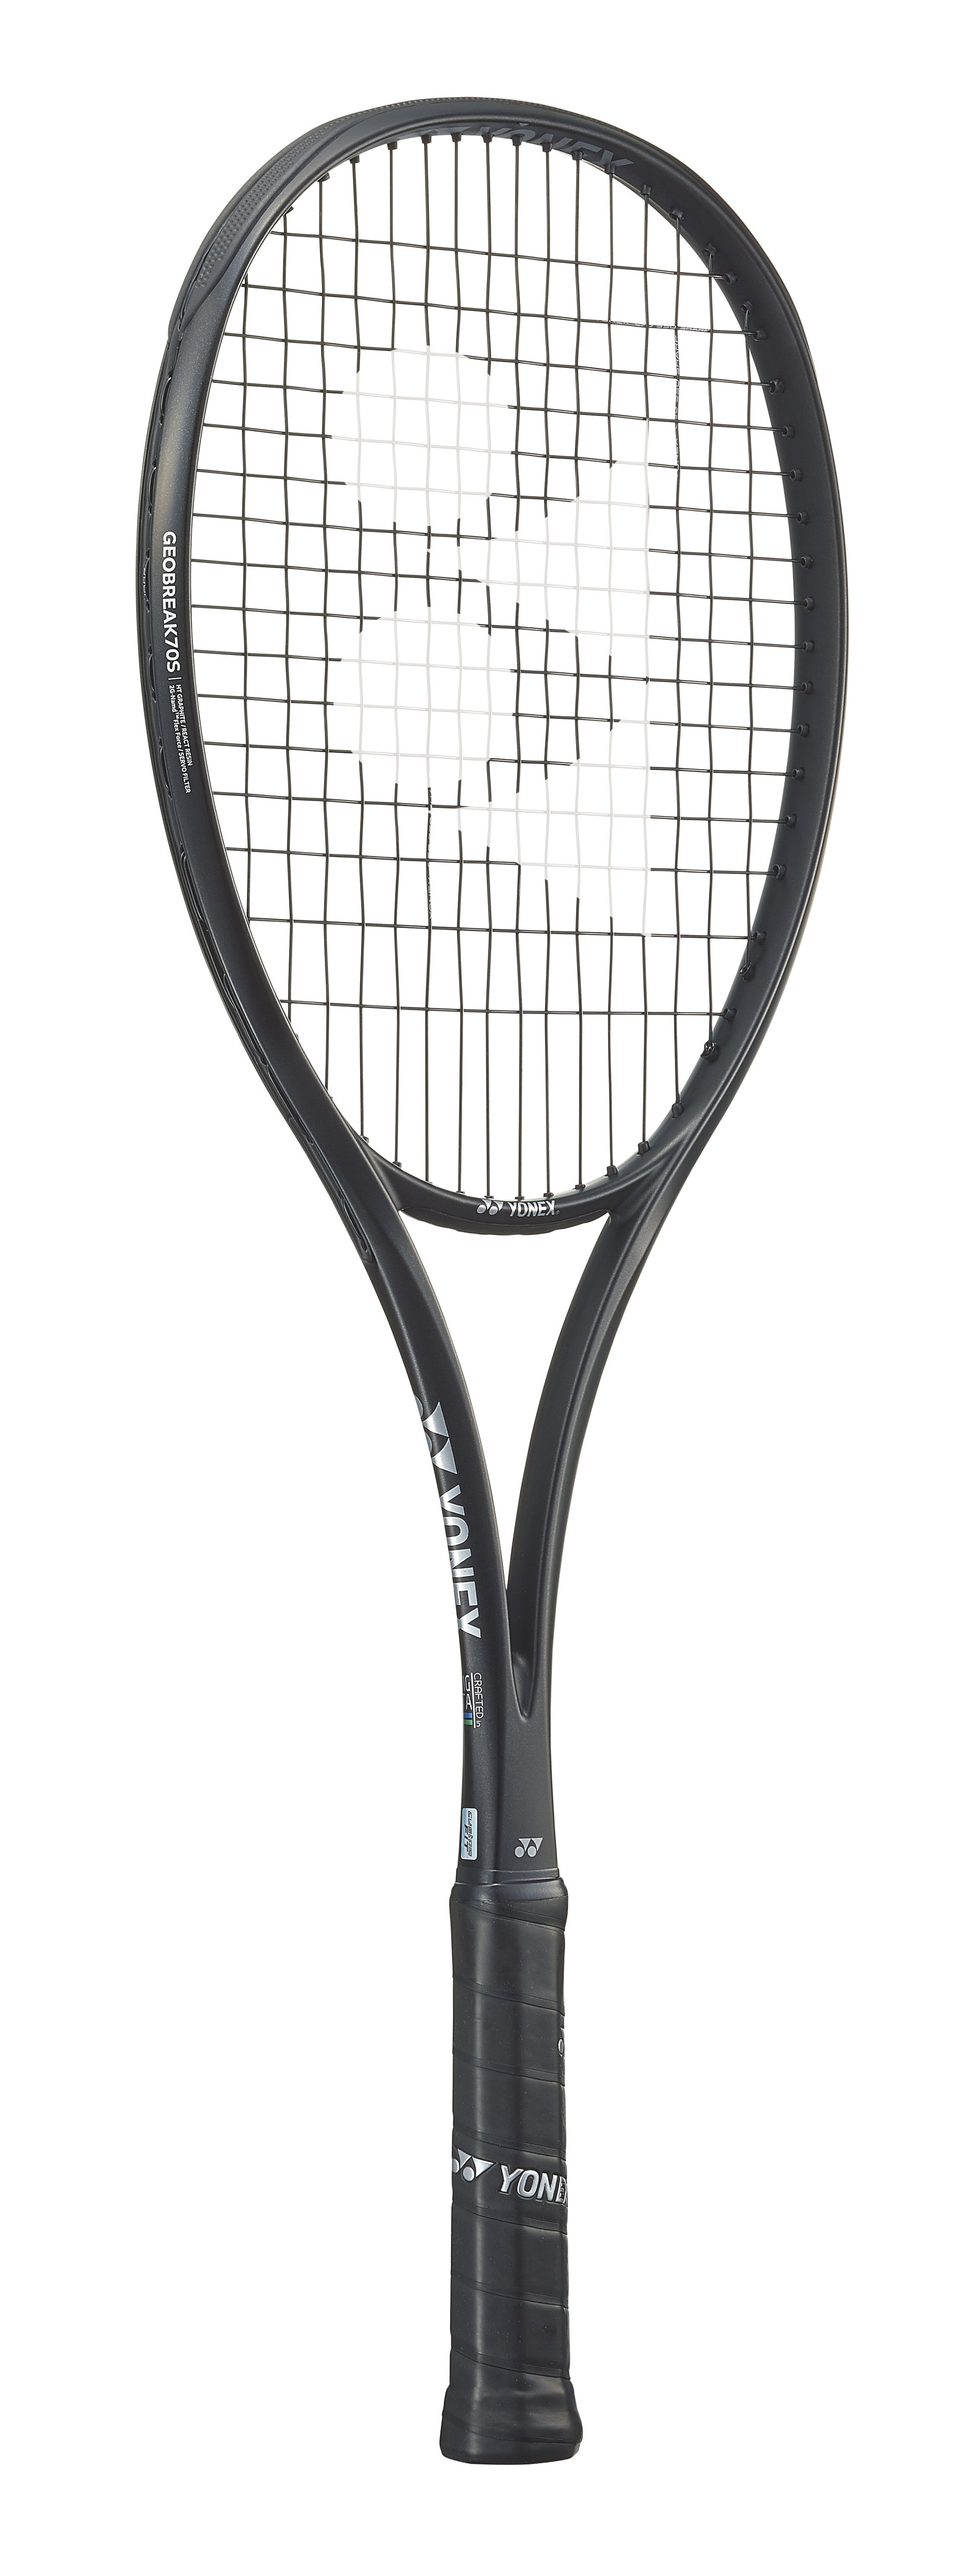 ジオブレイク70VS UL0 ヨネックスソフトテニスラケット - ラケット(軟式用)